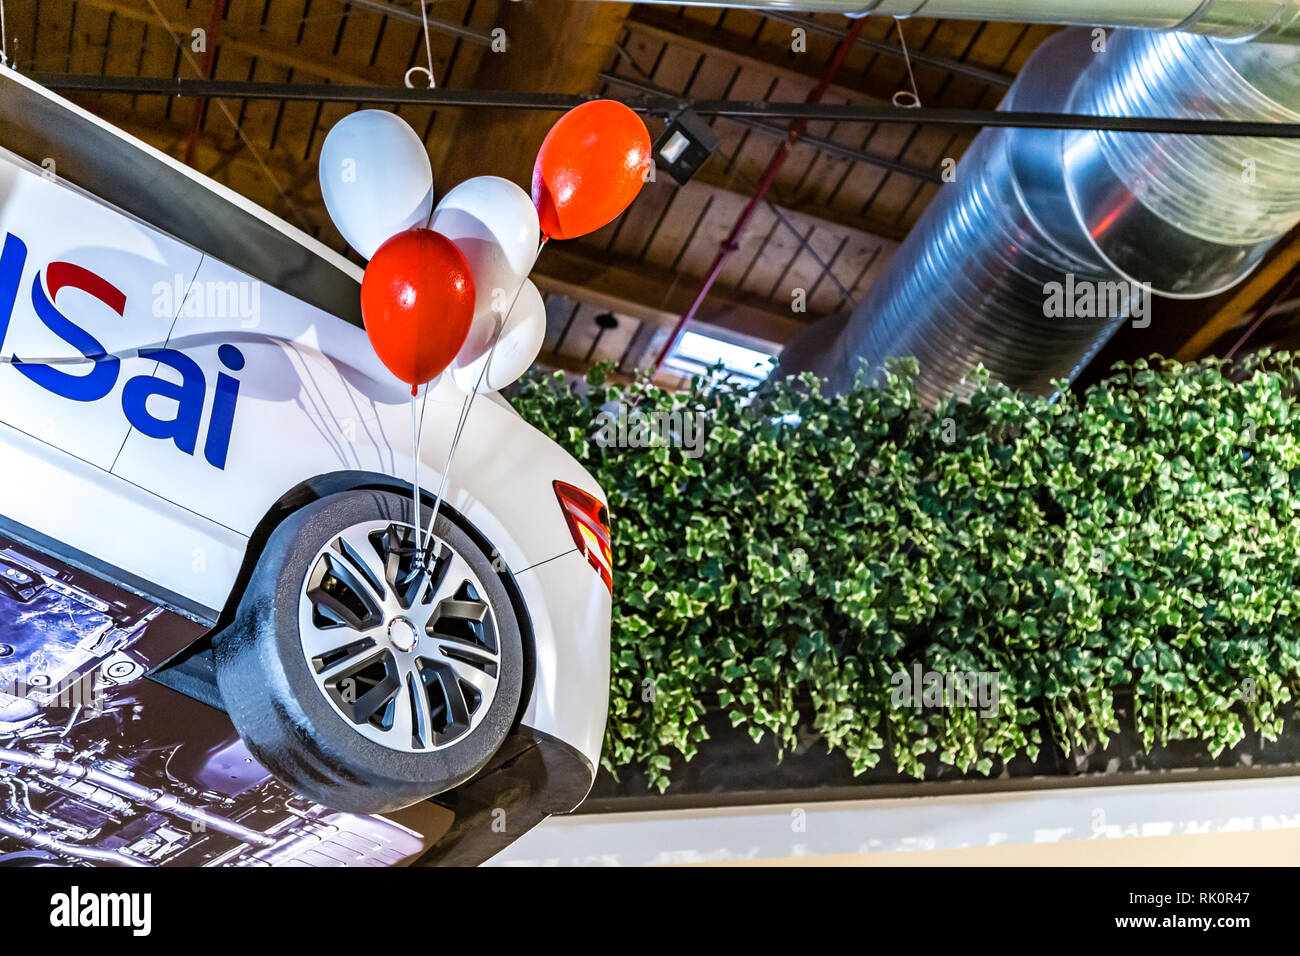 Bologne, Italie - 16 décembre 2018 : les lumières sont éclairants gonflables publicité jouet voiture de BMW à UNIPOLSAI FICO Eataly World, le plus grand gourmet agr Banque D'Images